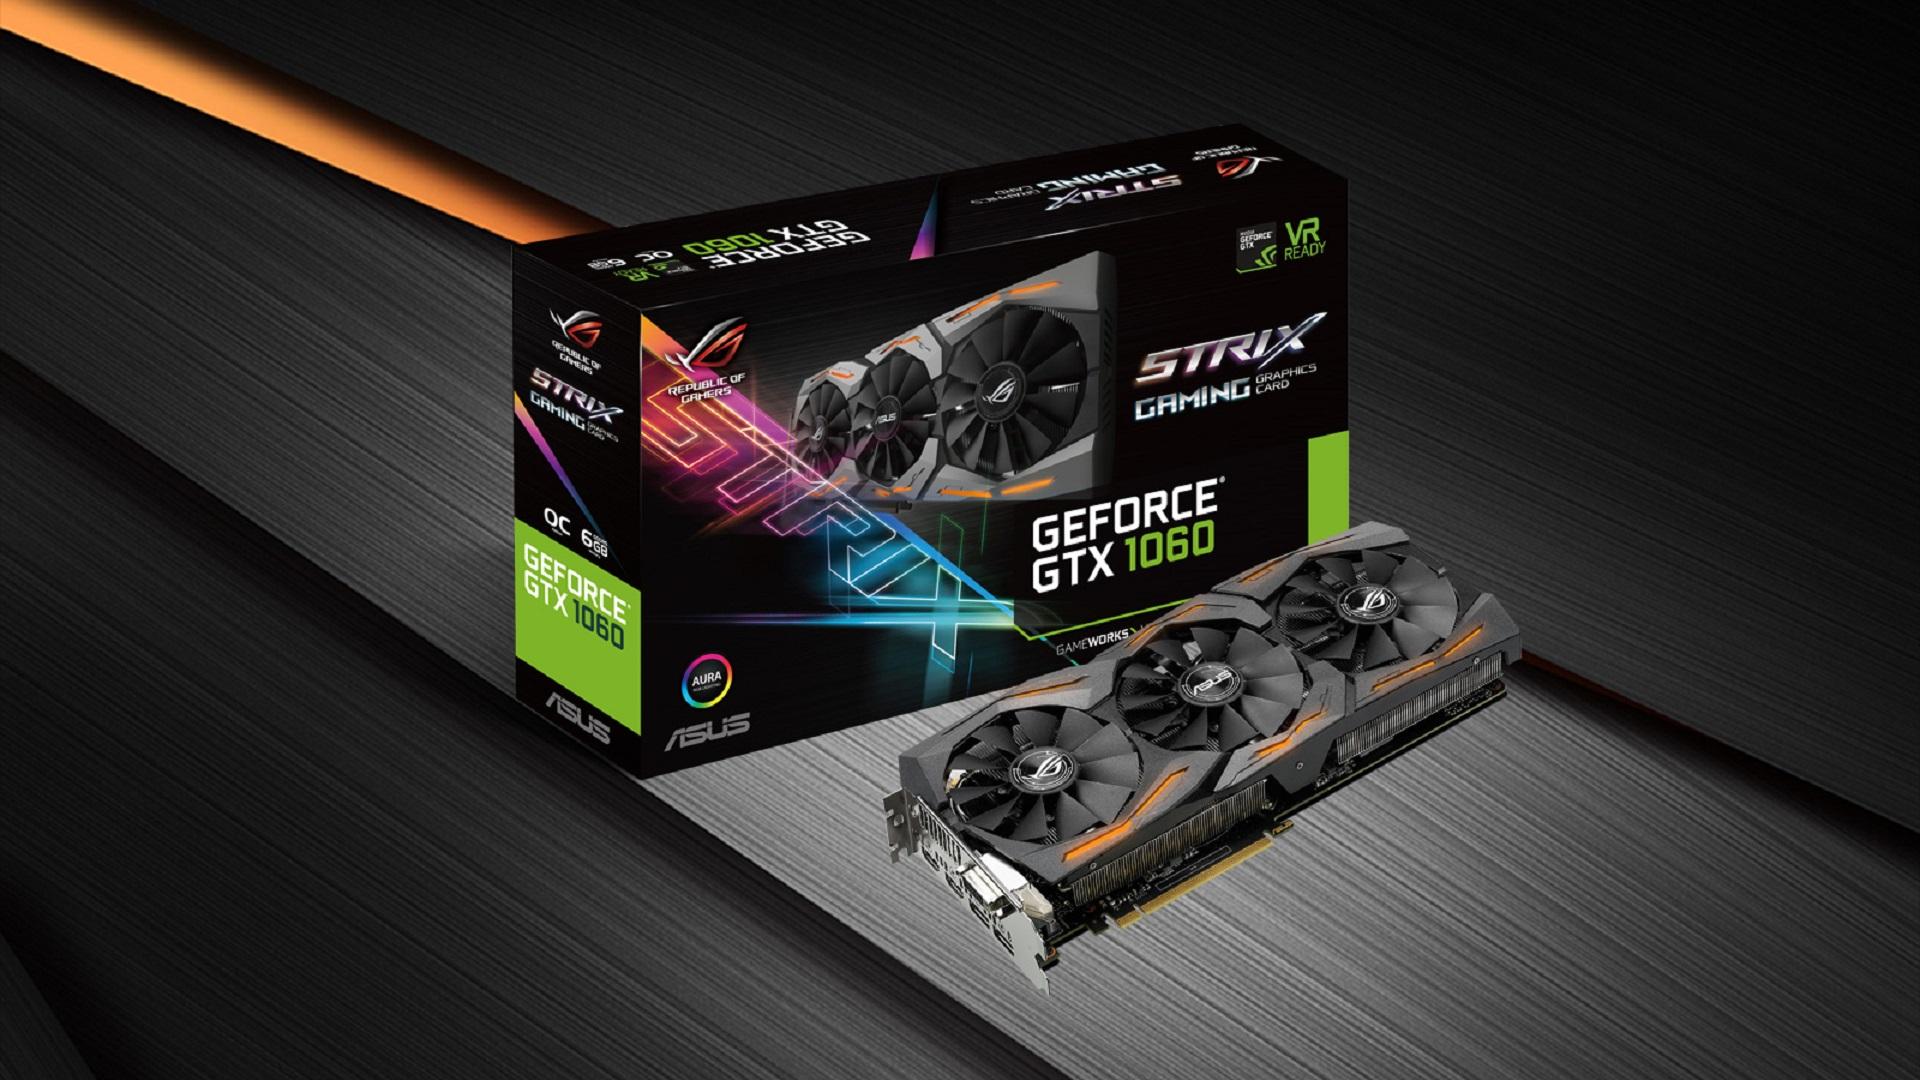 ASUS ROG giới thiệu dòng card đồ họa Strix GeForce GTX 1060